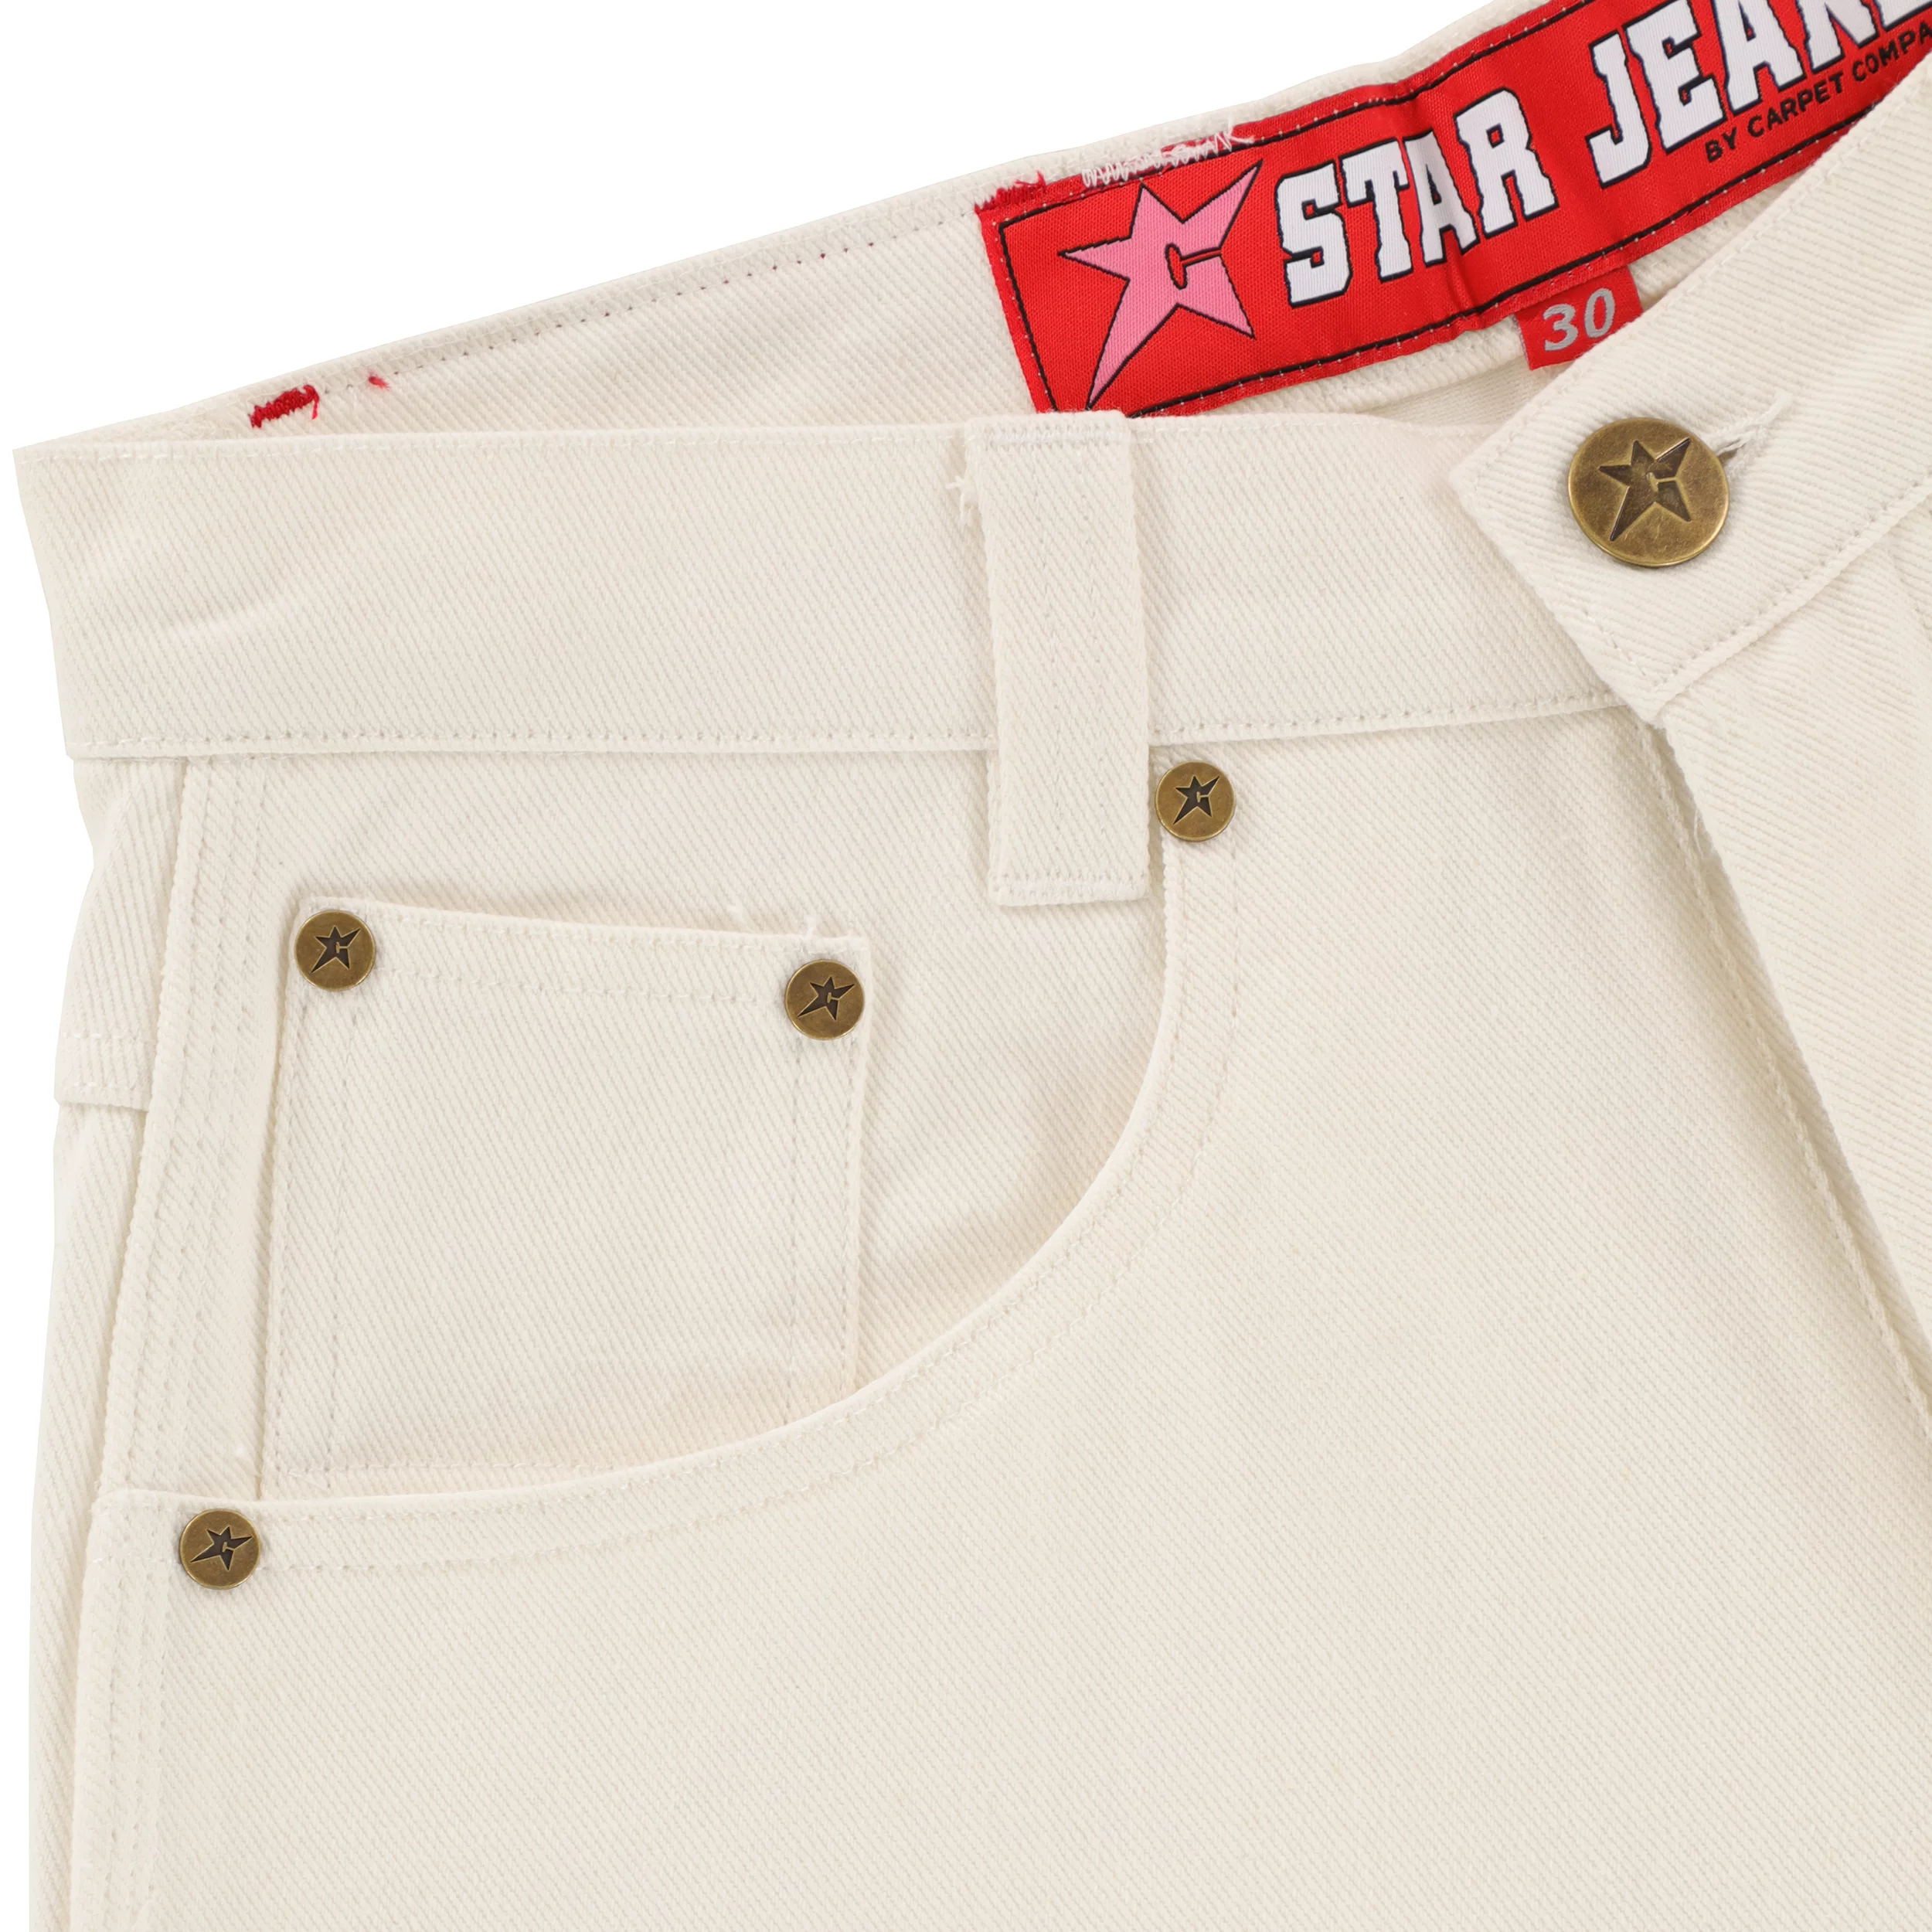 Carpet Season 16 C-Star Jeans